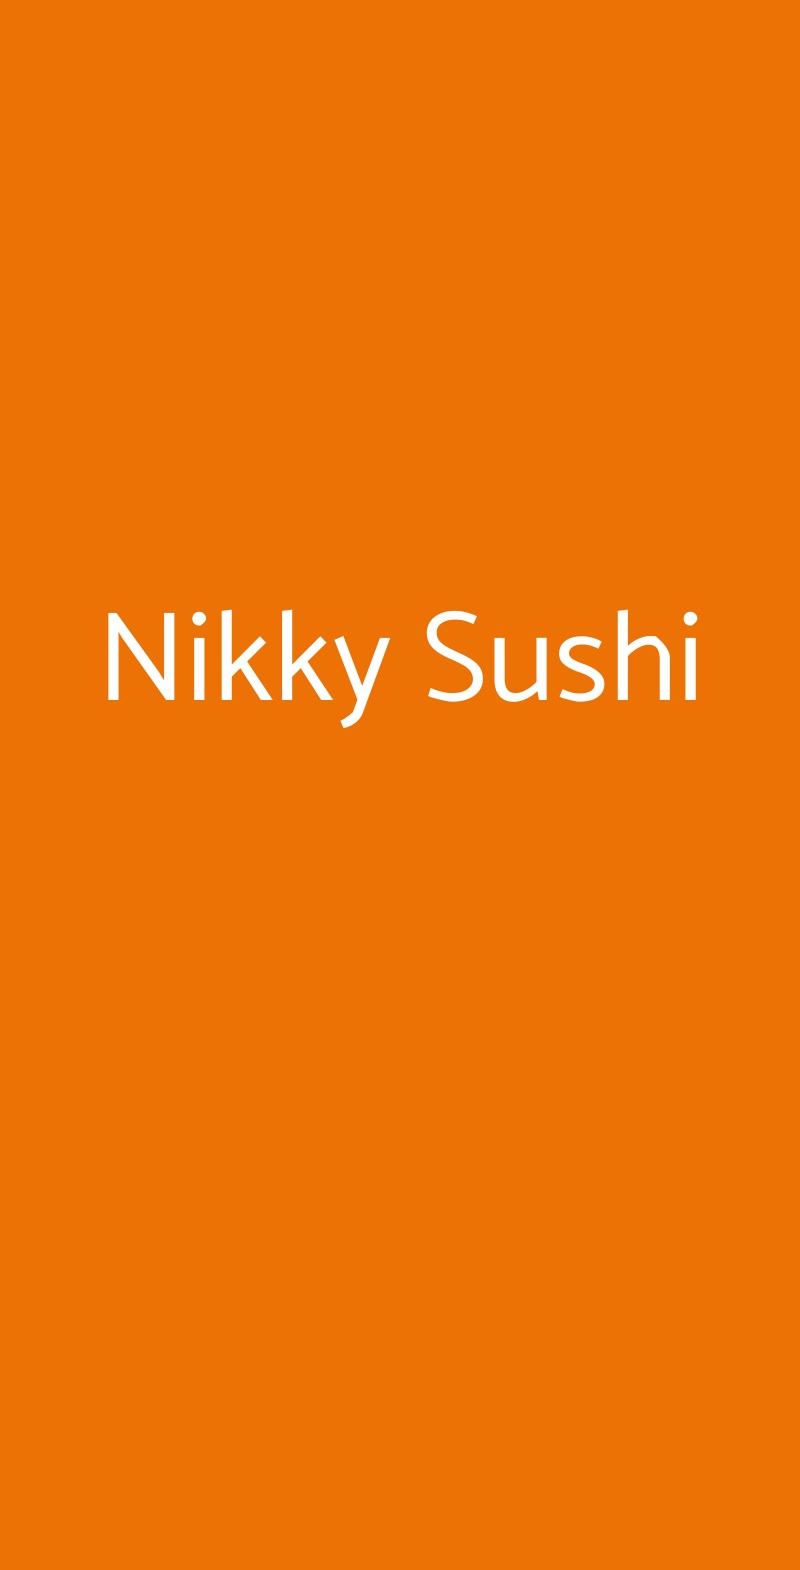 Nikky Sushi Monza menù 1 pagina